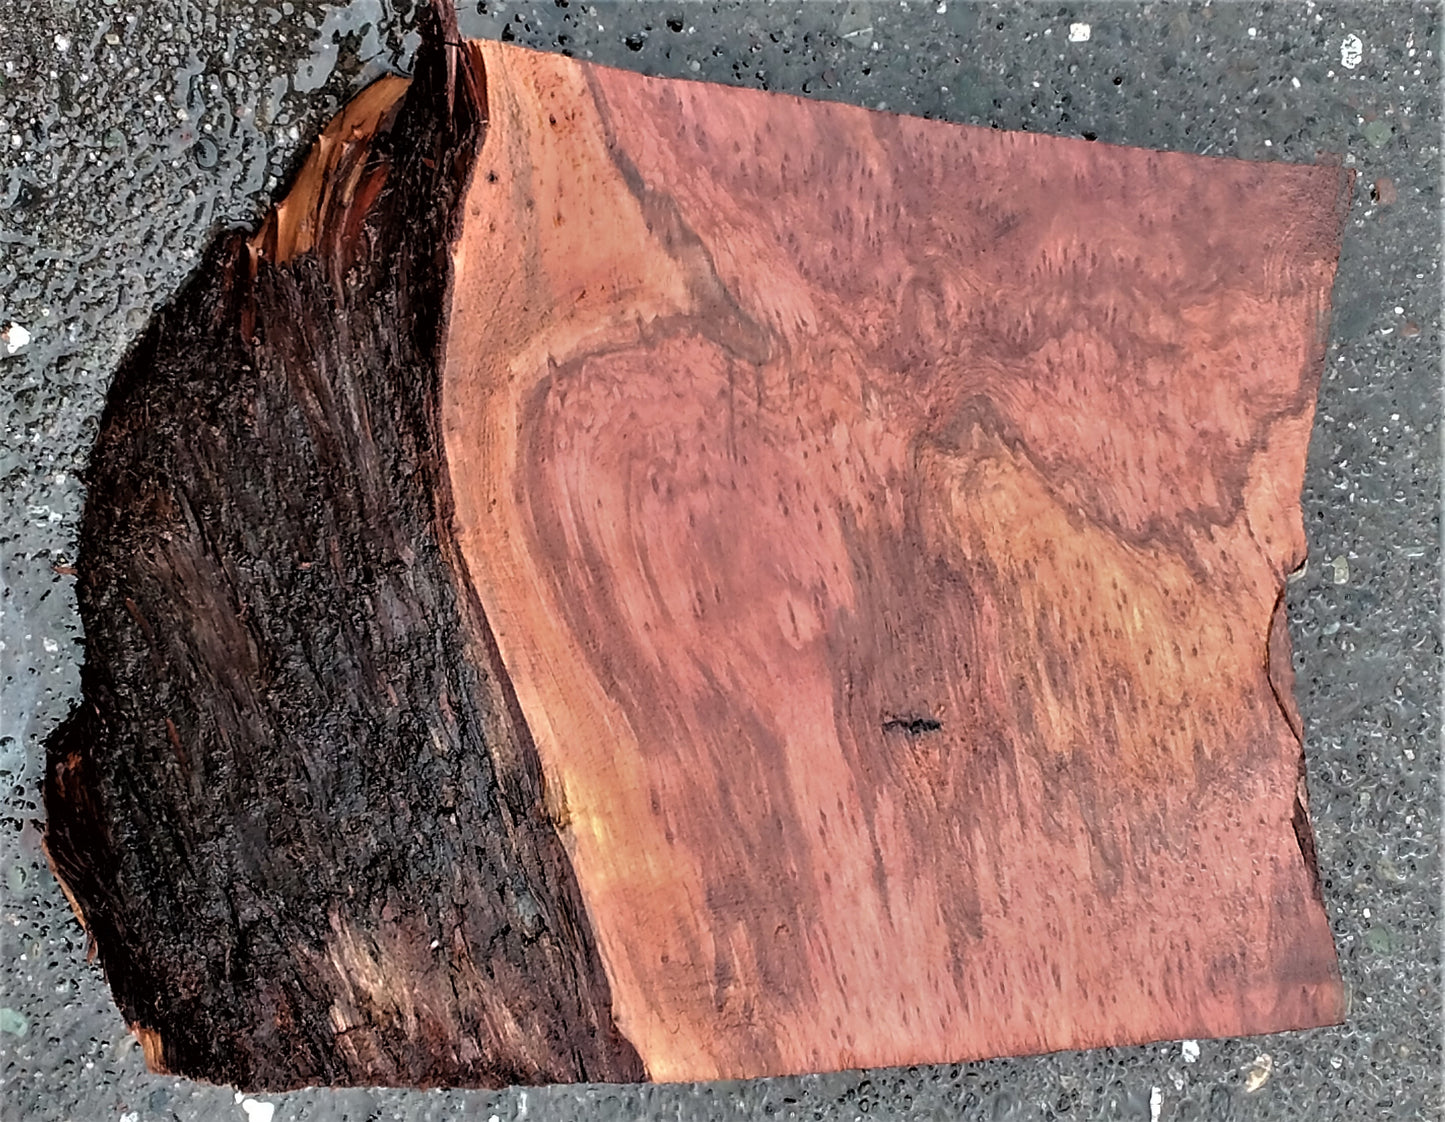 Redwood burl | bowl turning | wood turning | DIY wood crafts | bl23-0236